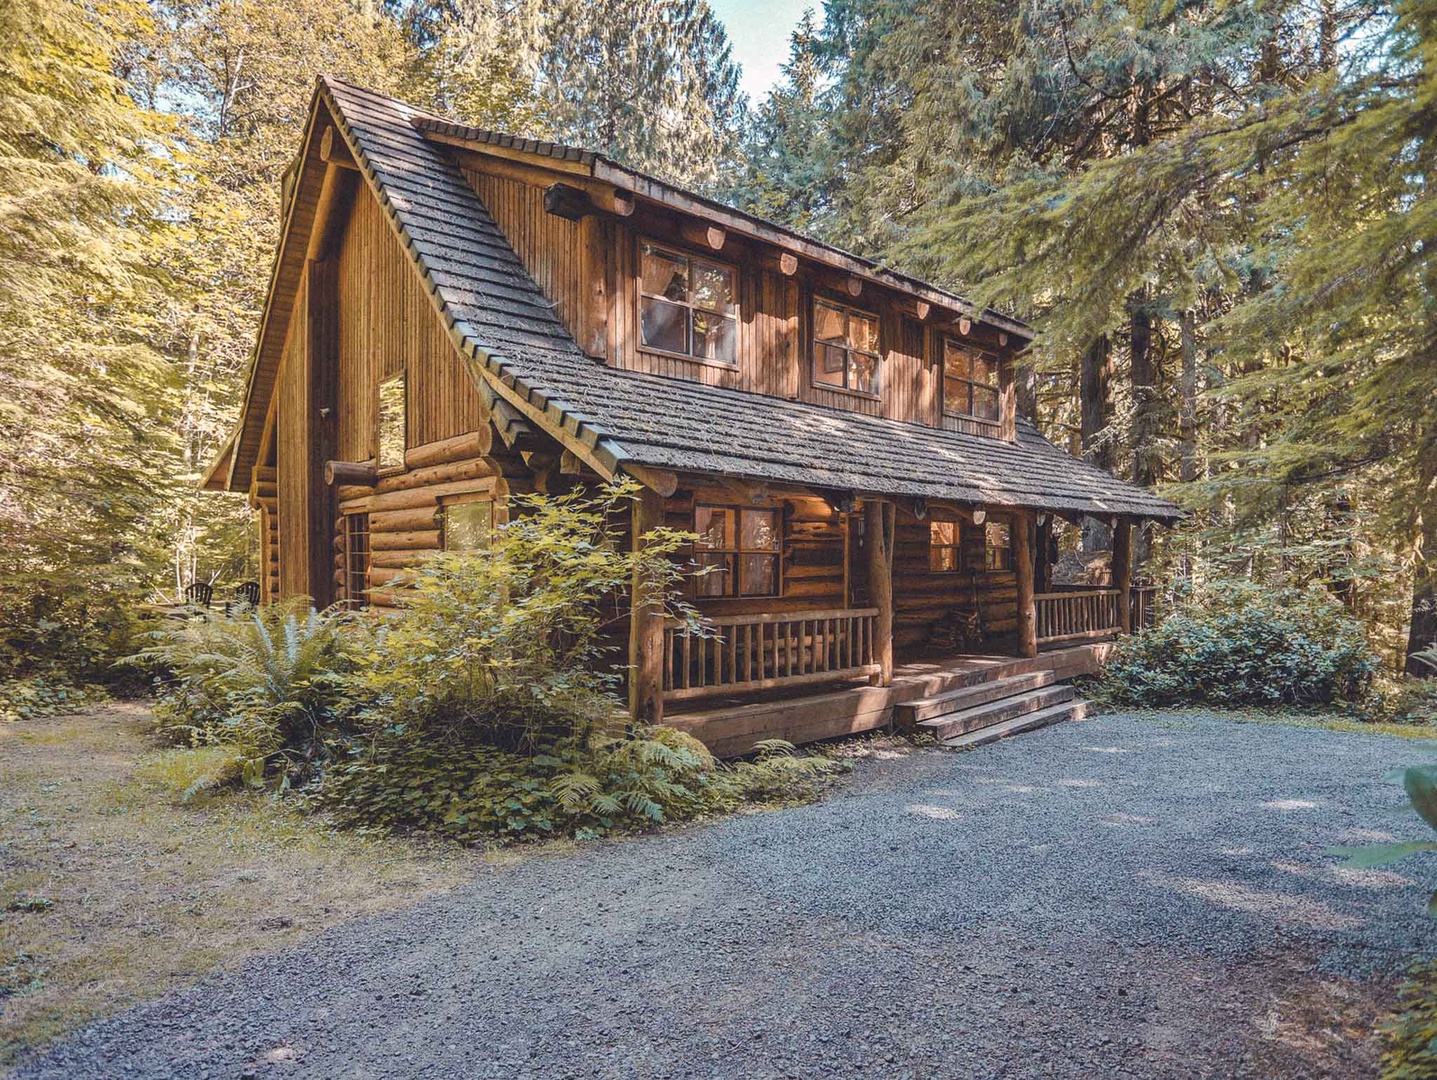 Bear Den Log Cabin